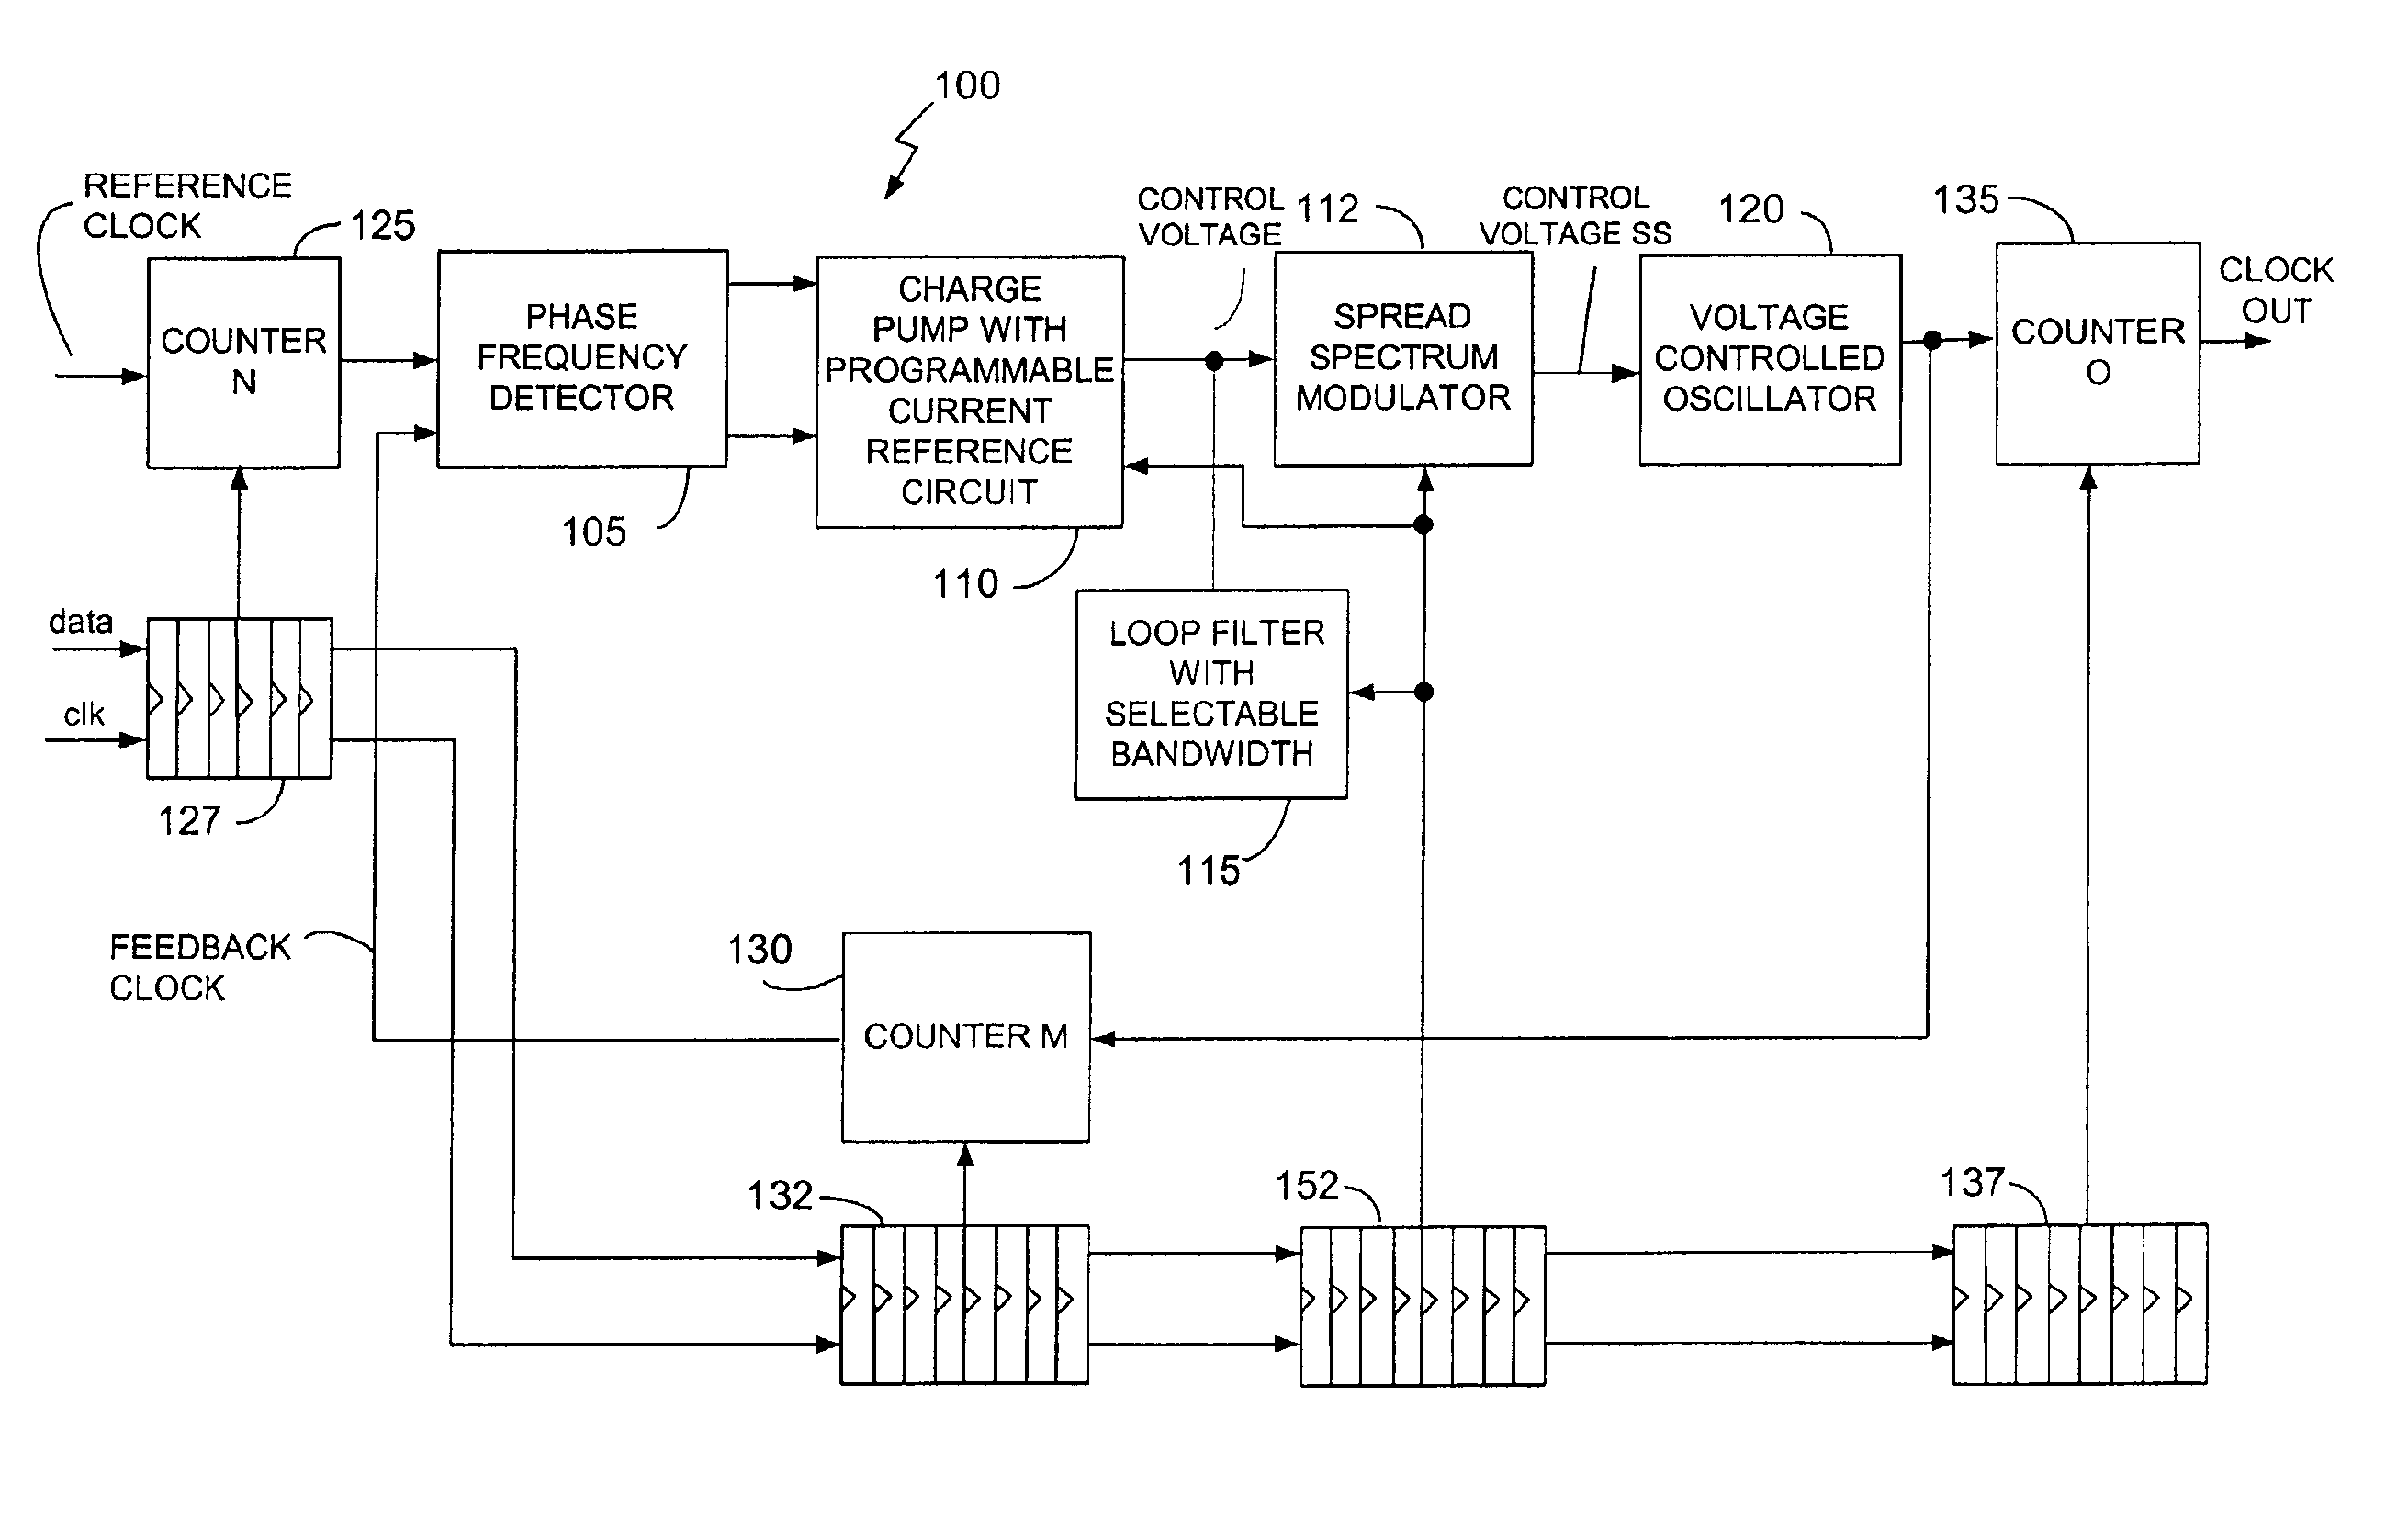 Programmable loop bandwidth in phase locked loop (PLL) circuit